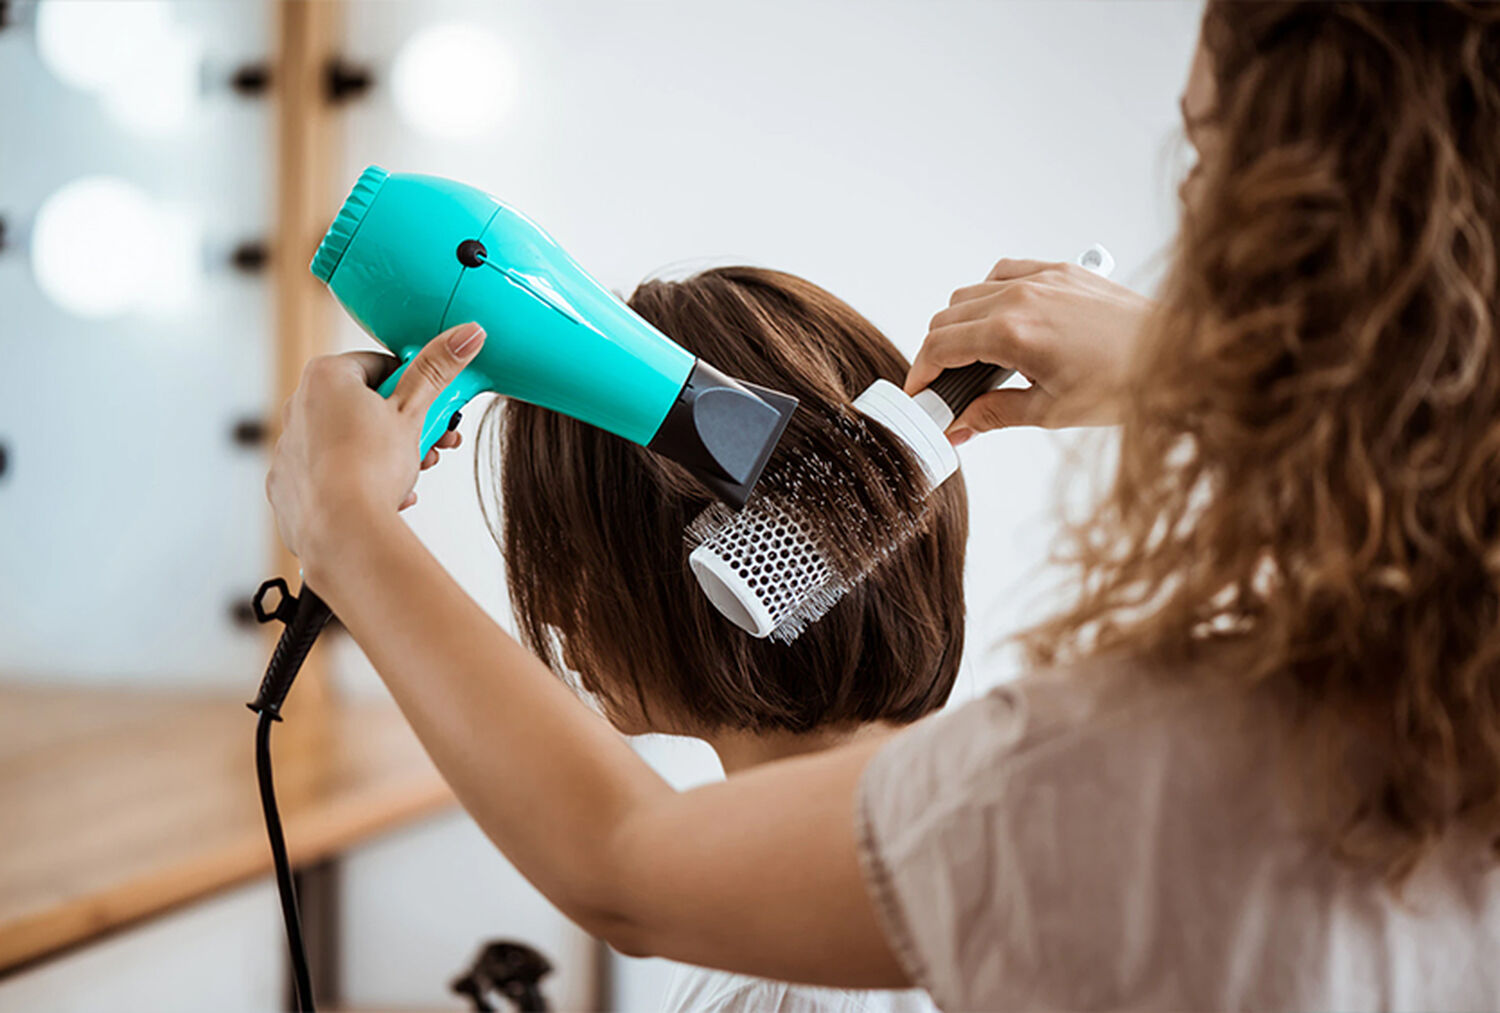 Comment utiliser la brosse lissante pour les cheveux ?